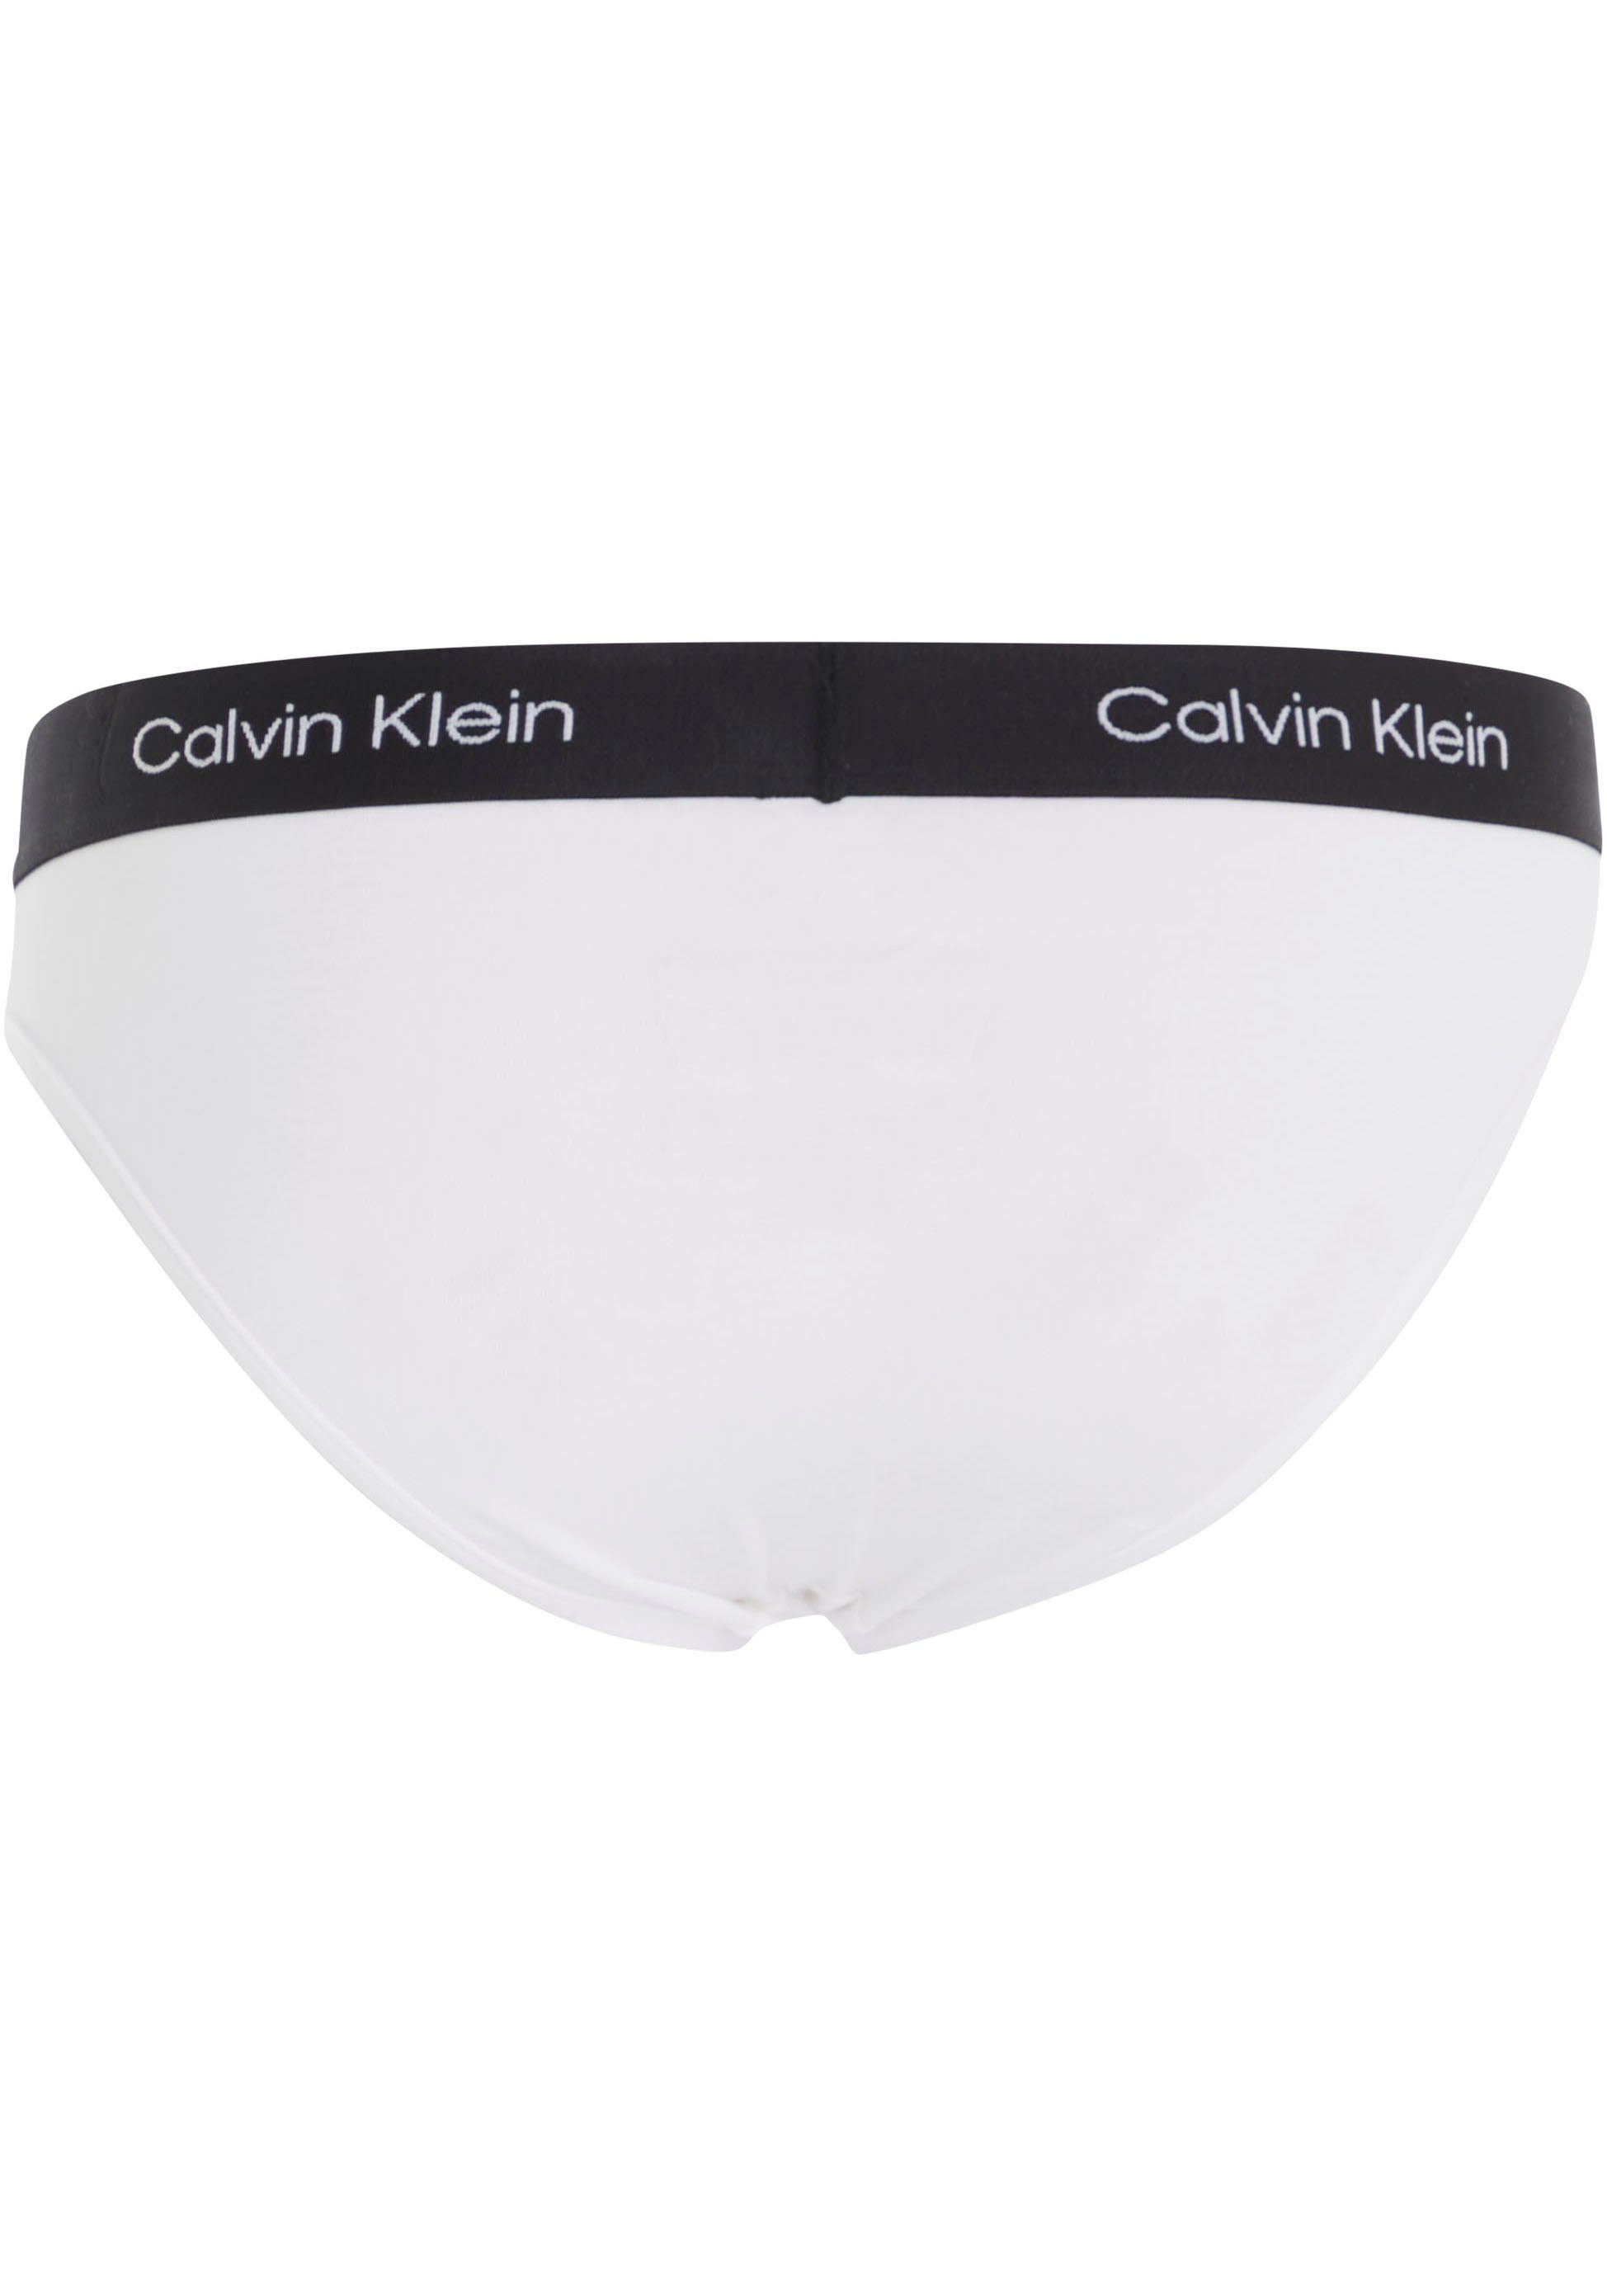 Underwear Klein Calvin mit weiß Bikinislip Allover-Muster